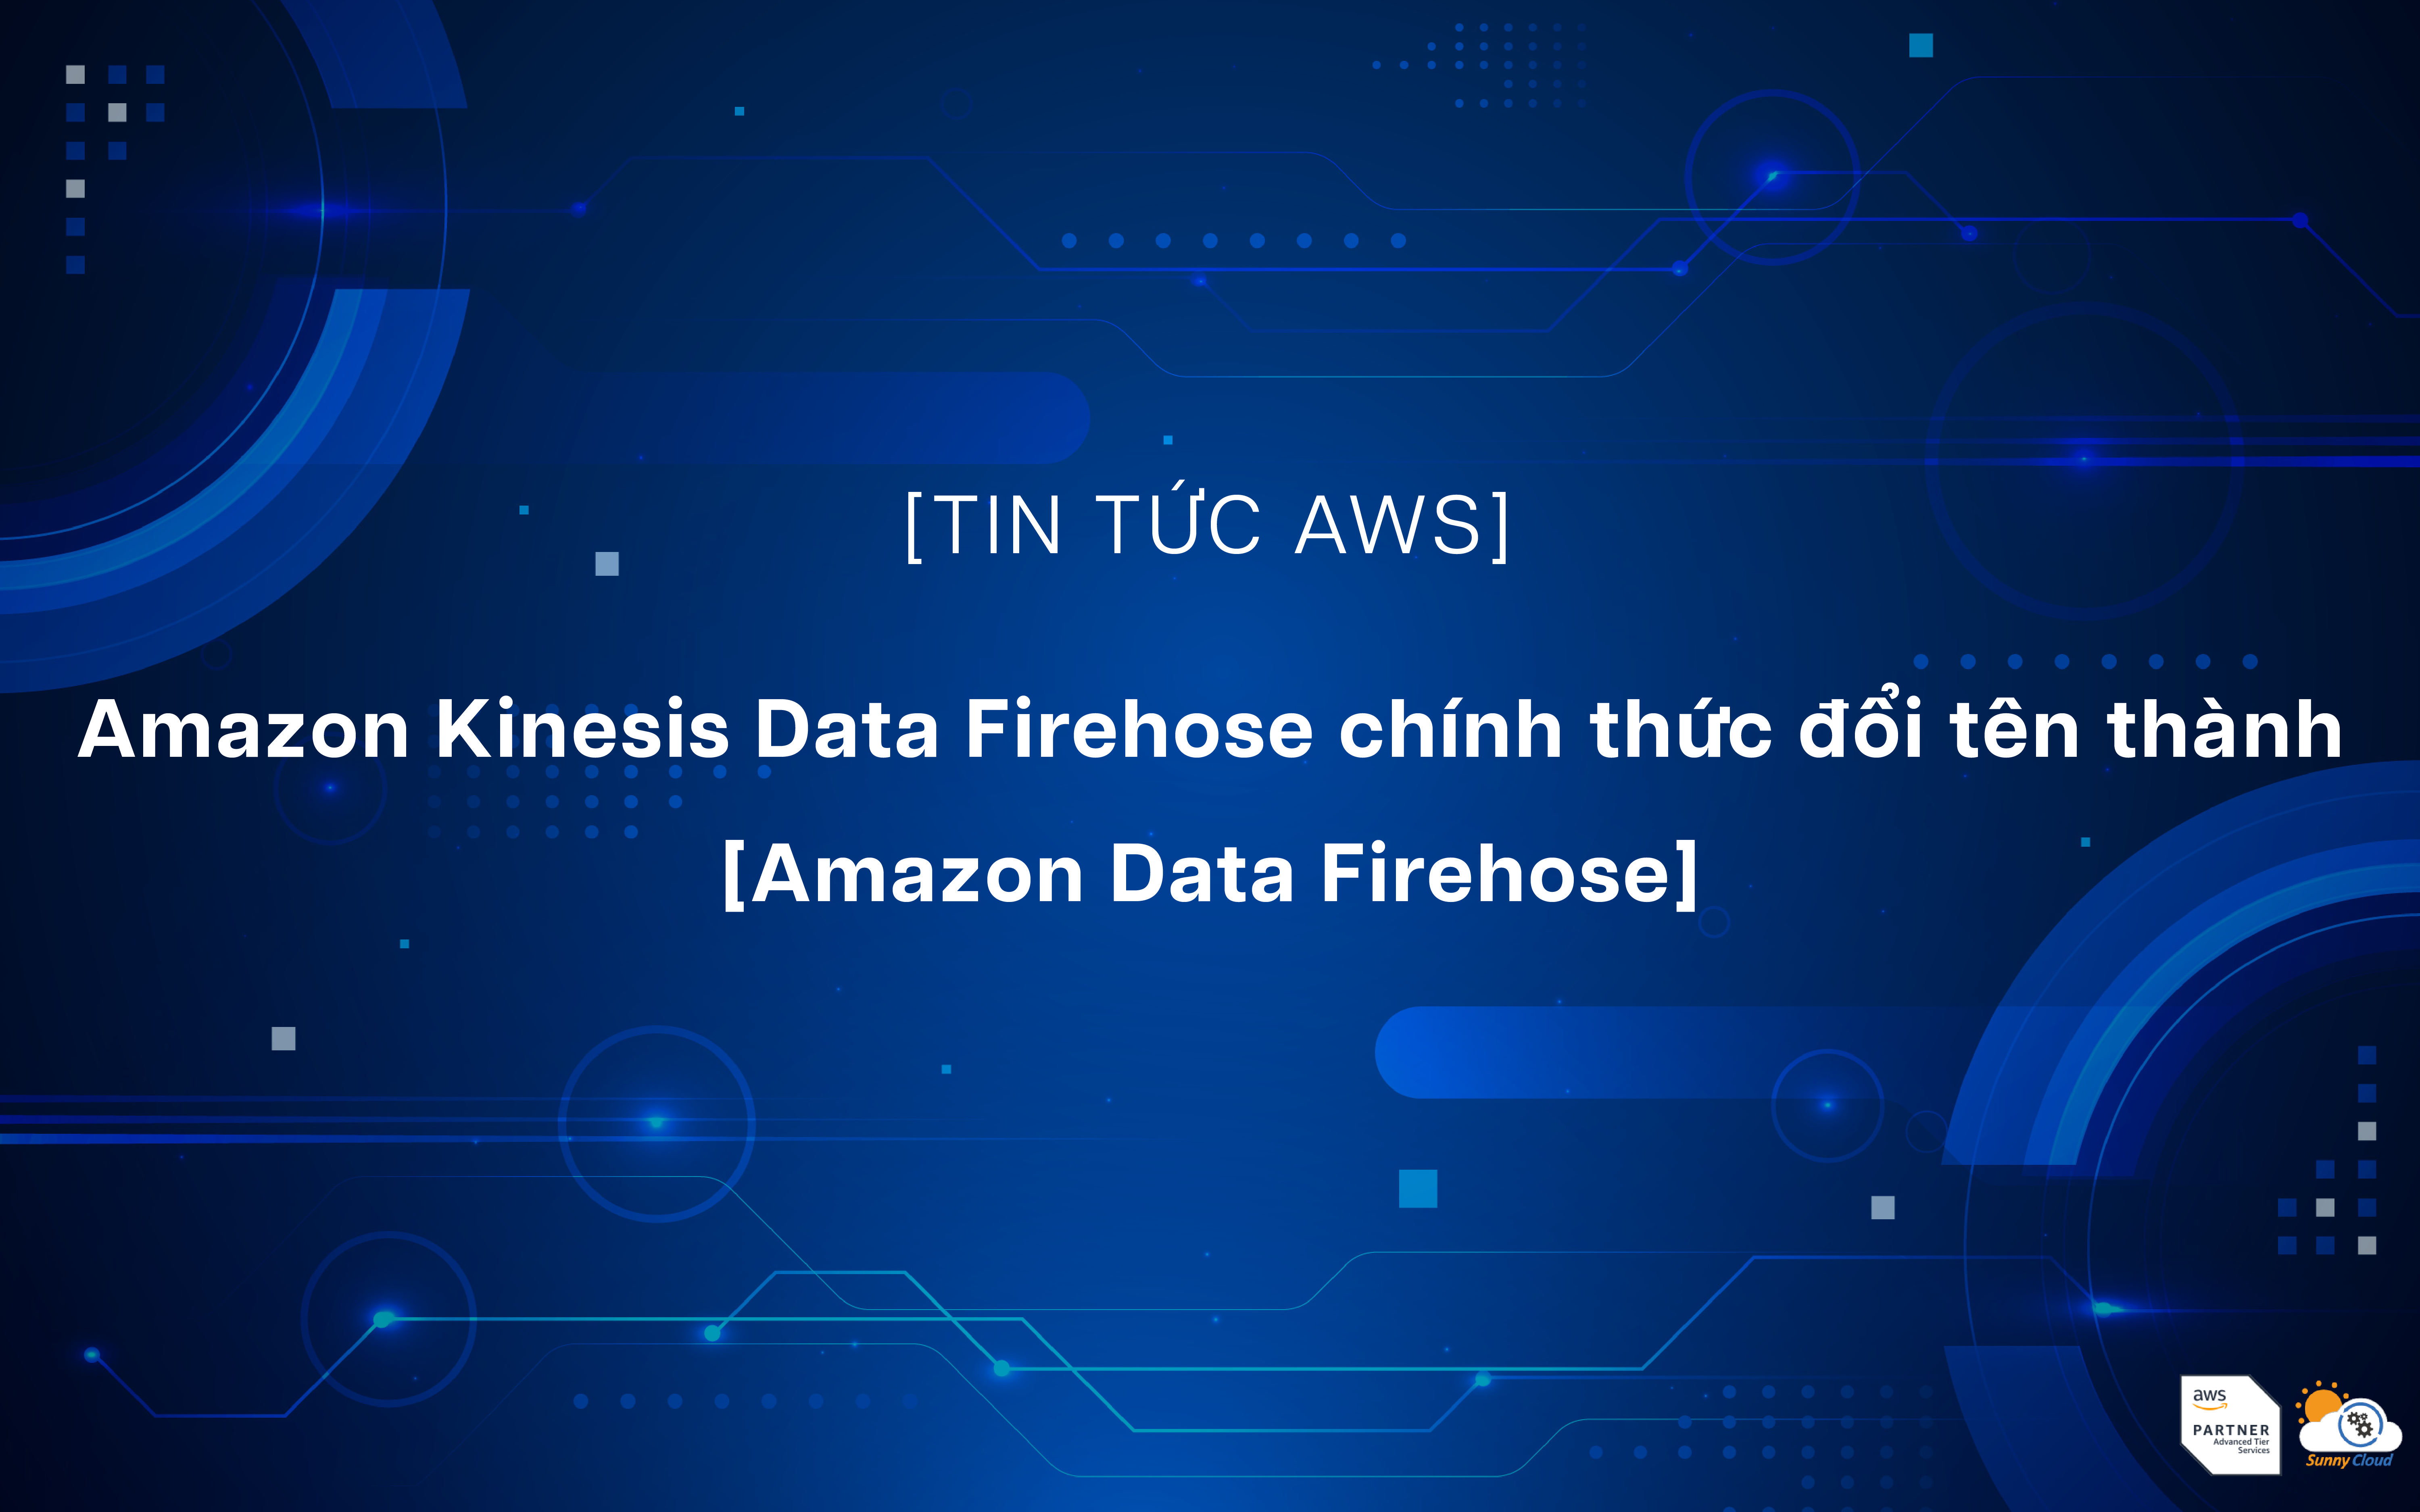 Amazon Kinesis Data Firehose chính thức đổi tên thành Amazon Data Firehose